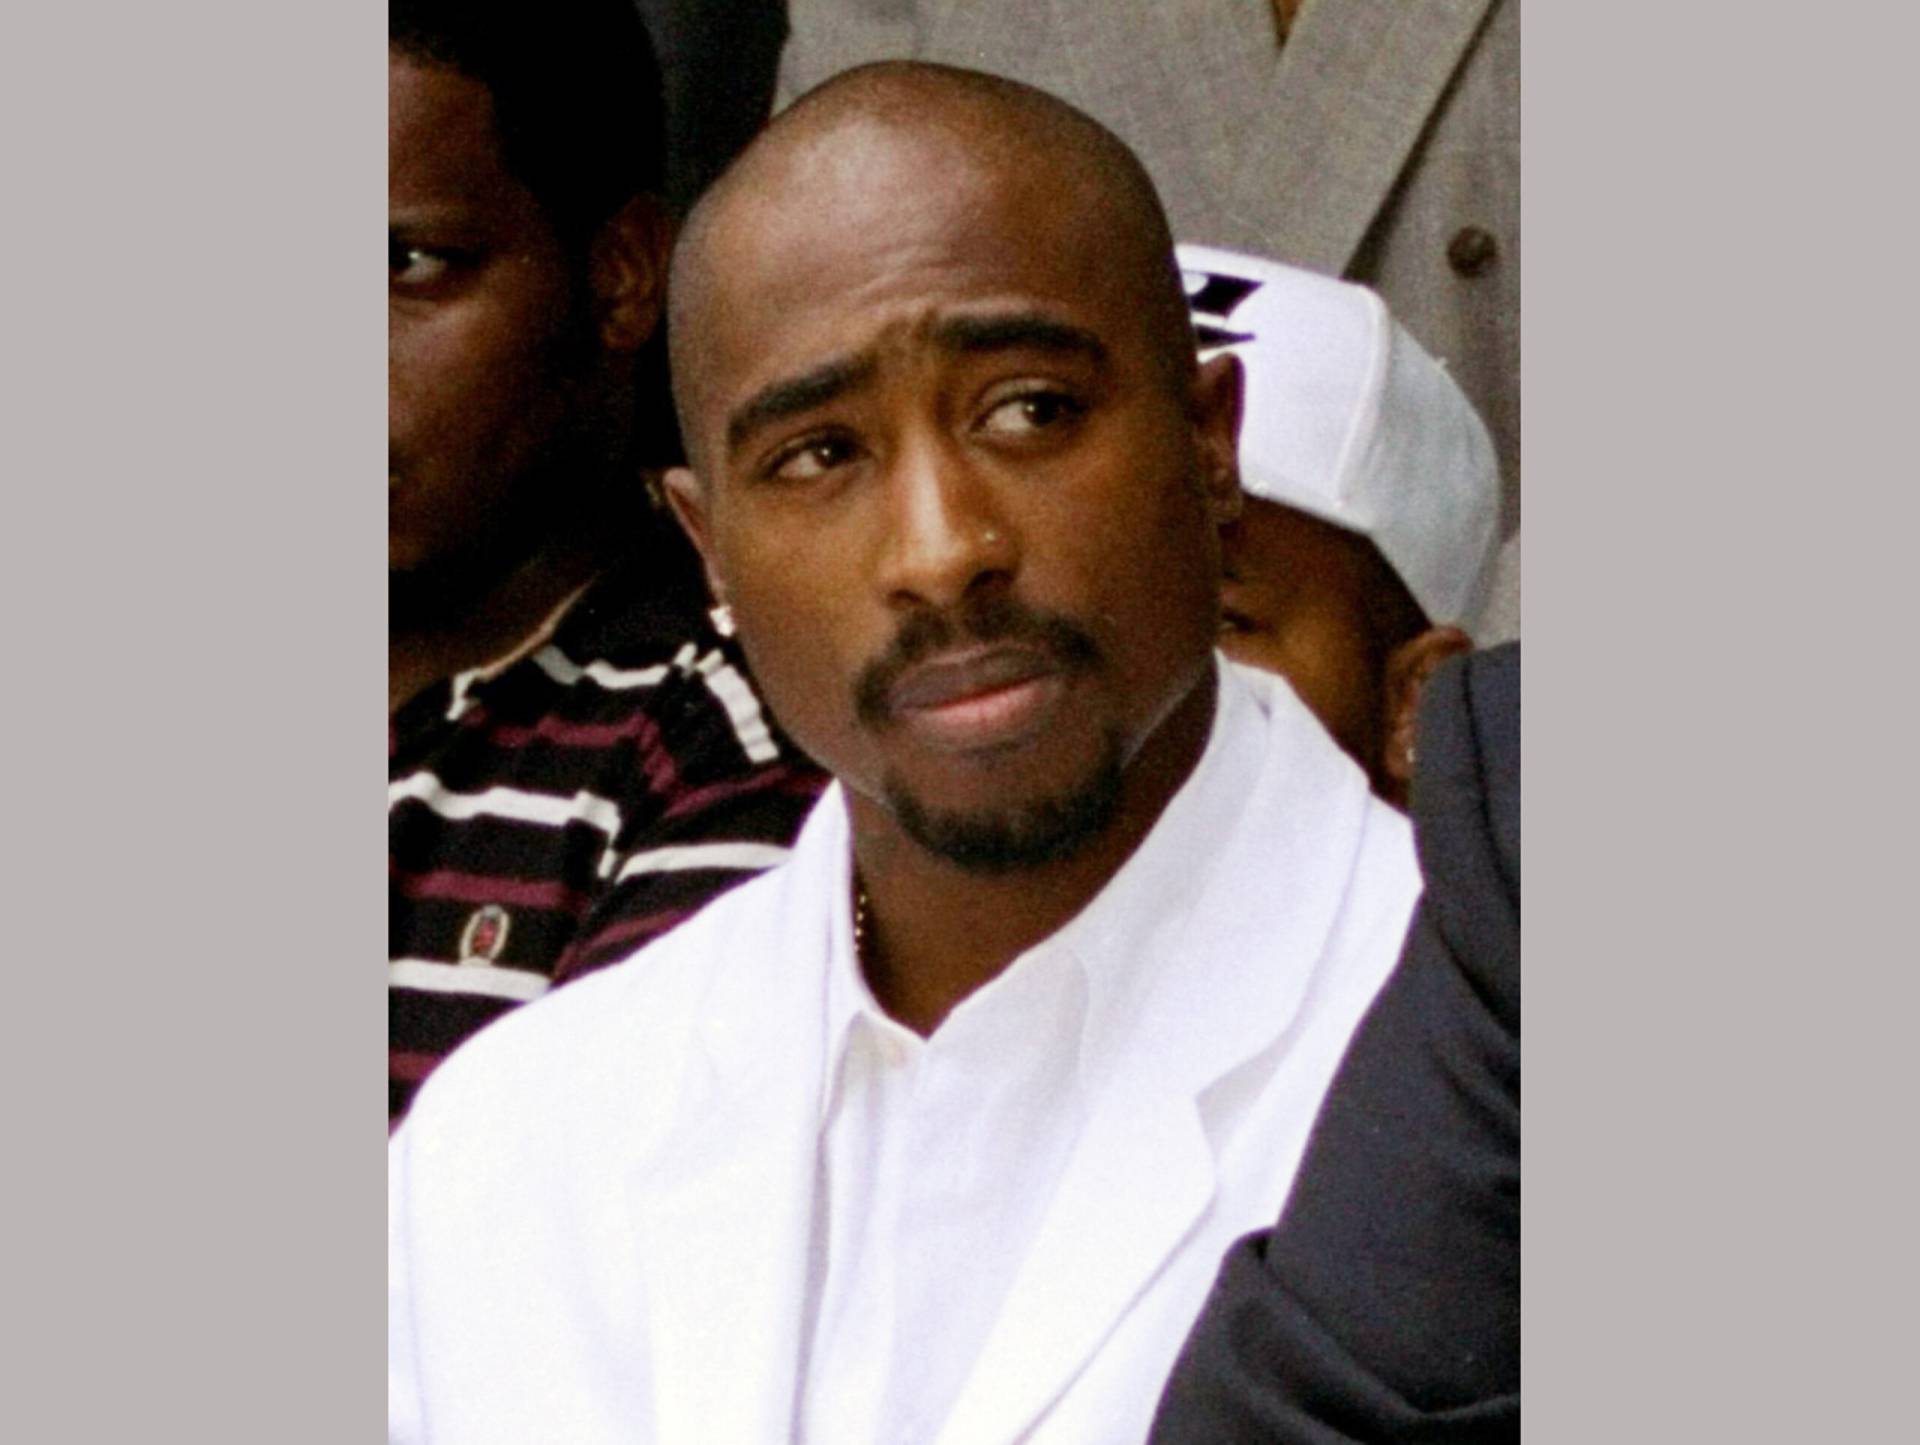 Συνελήφθη άνδρας για τη δολοφονία του ράπερ Tupac Shakur το 1996